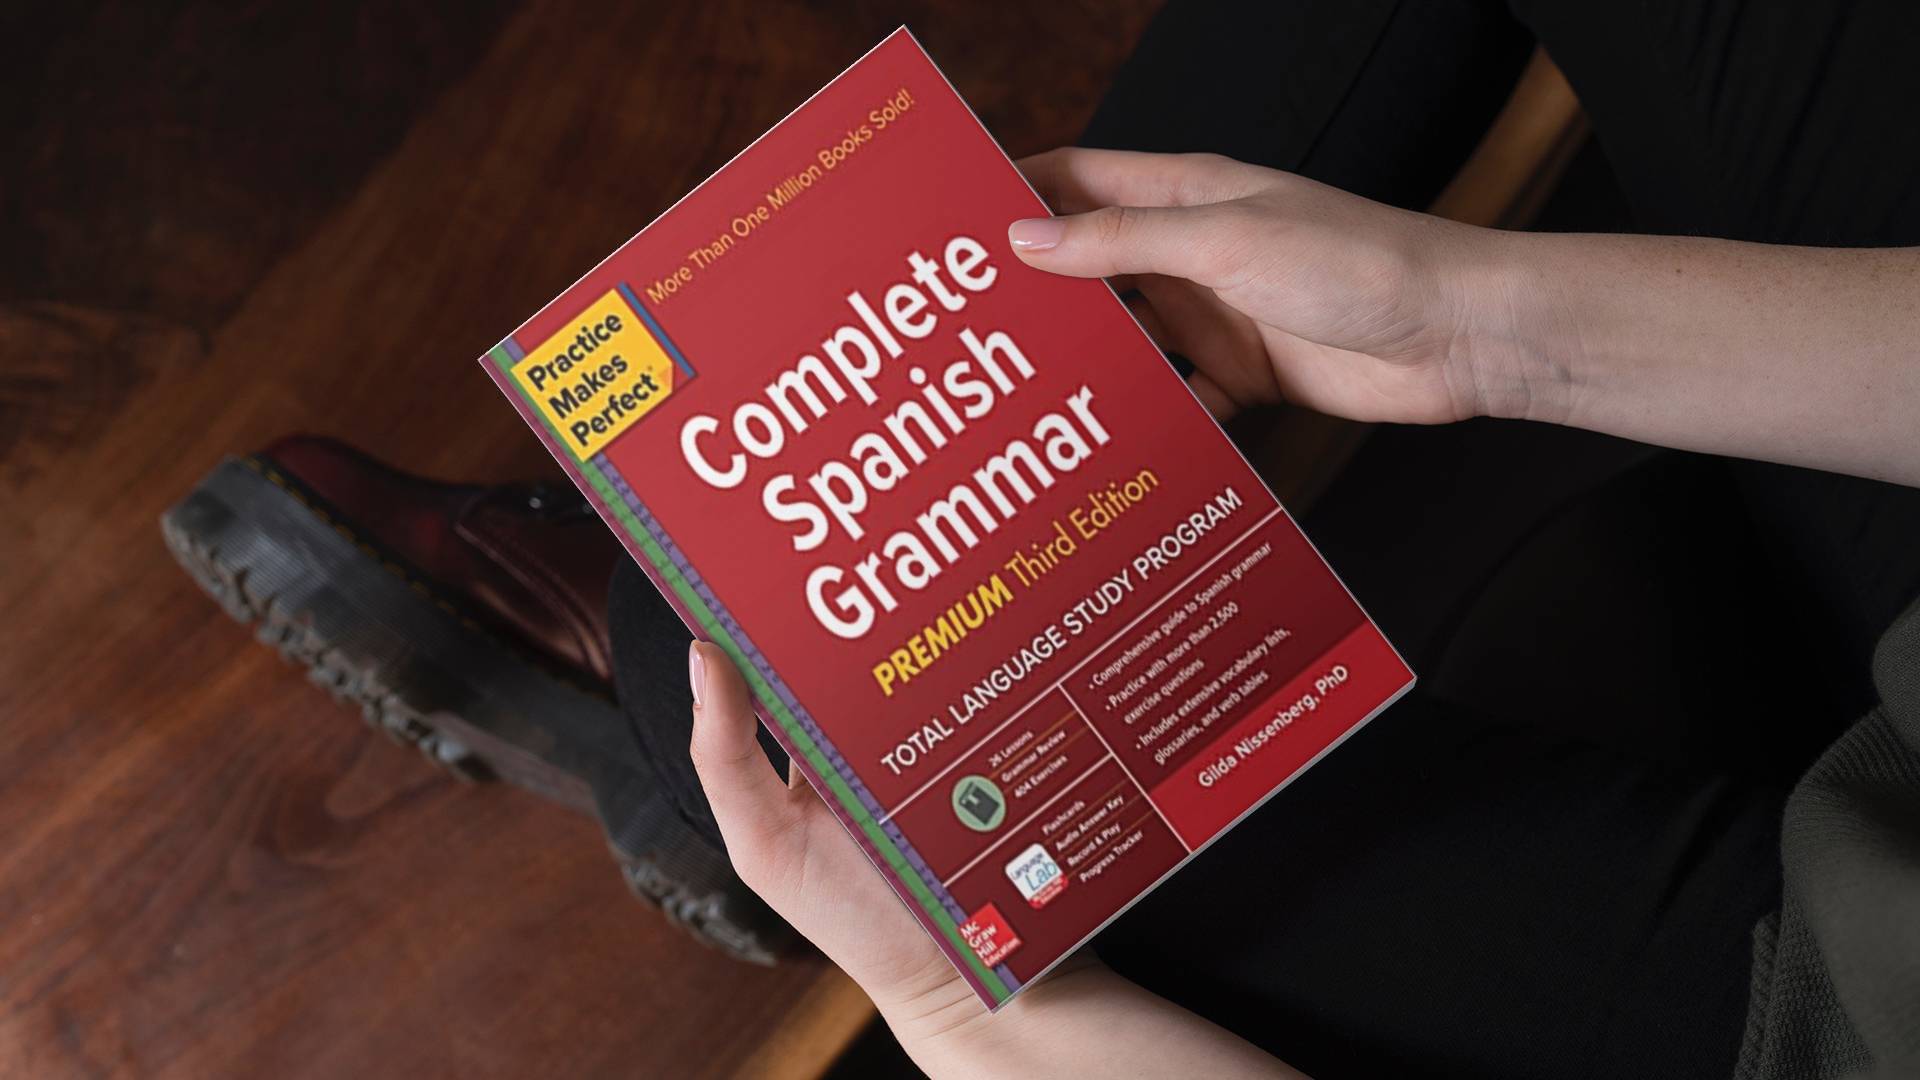 خرید کتاب زبان اسپانیایی | فروشگاه اینترنتی کتاب زبان اسپانیایی | Practice Makes Perfect Complete Spanish Grammar | کامپلیت اسپانیش گرامر